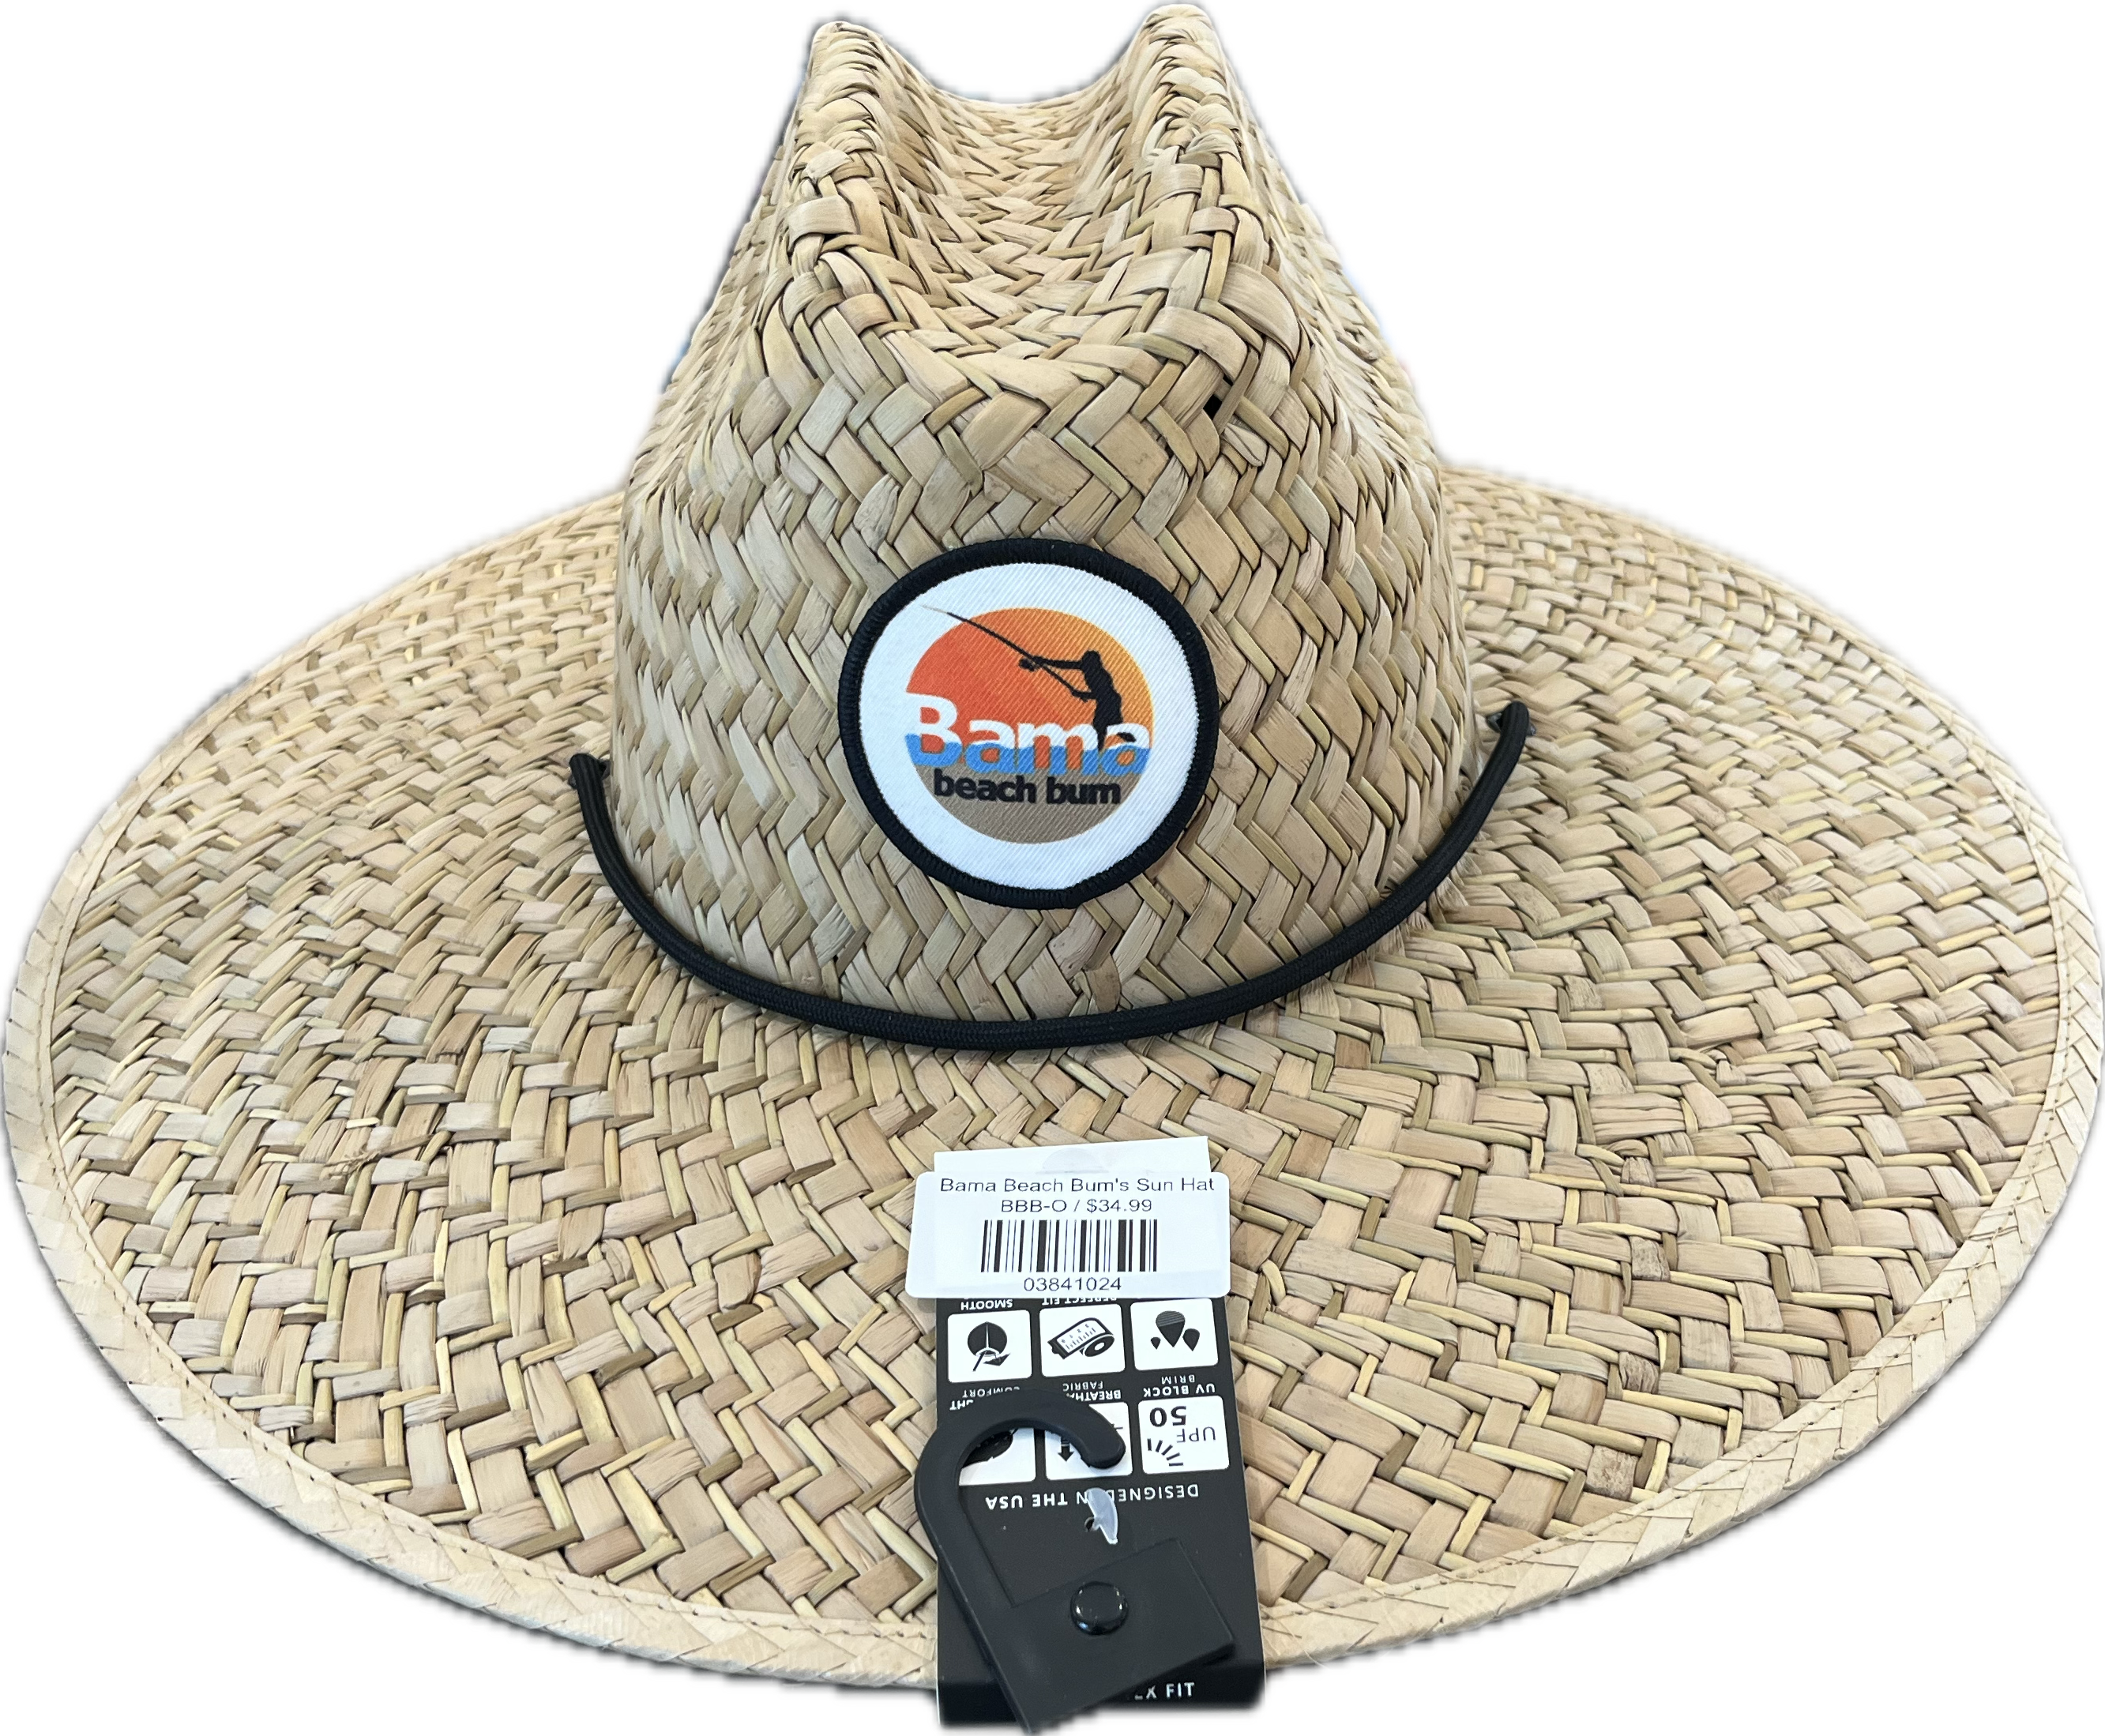 Bama Beach Bum's Sun Hat